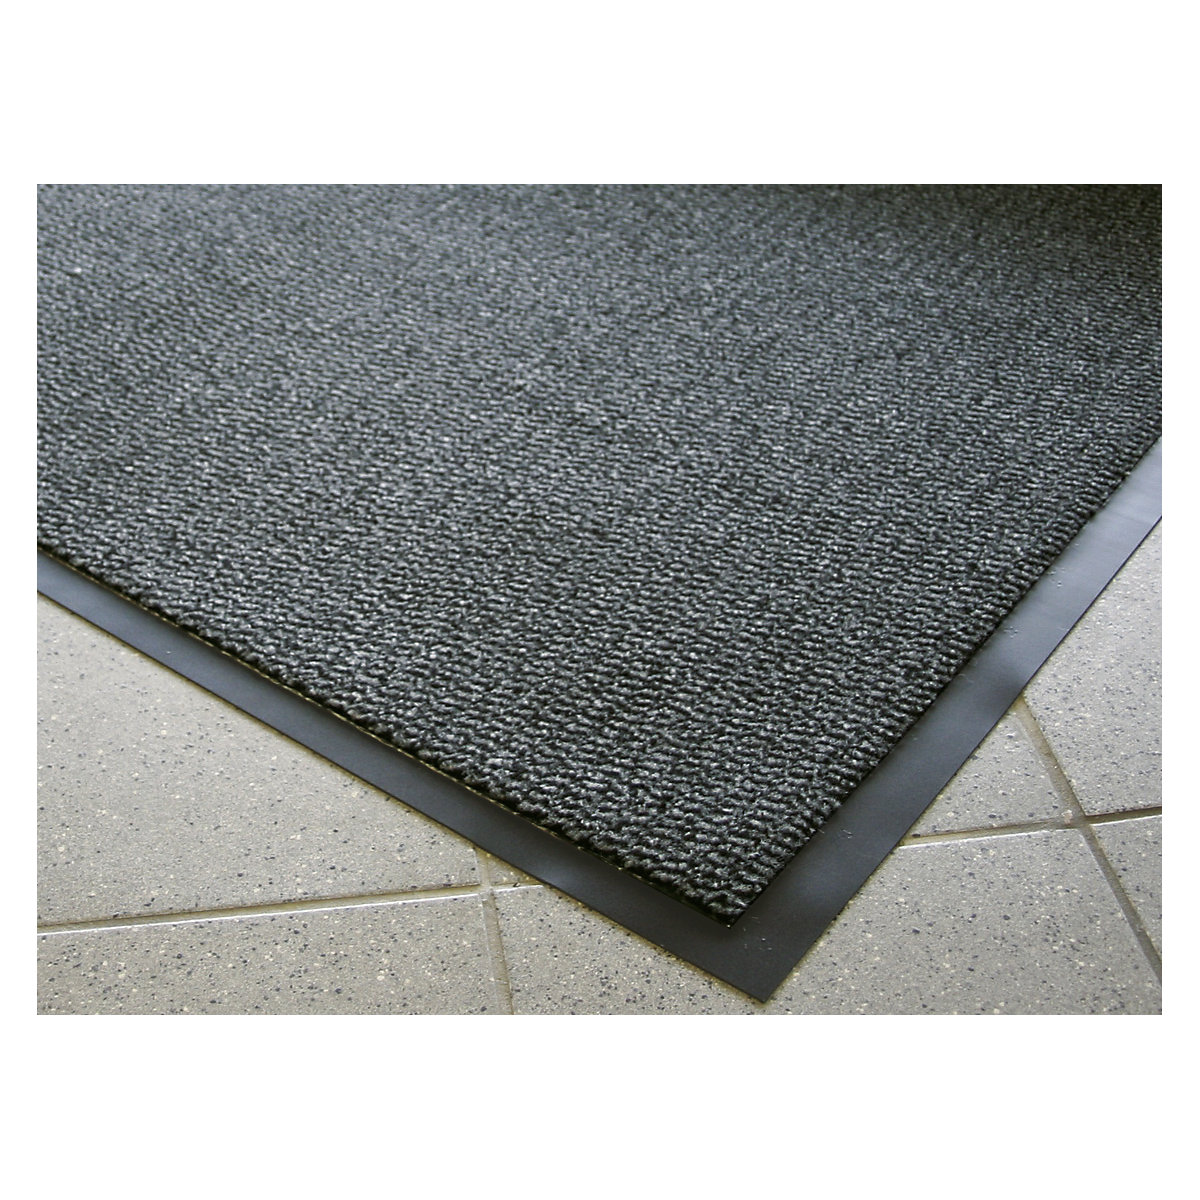 Entrance matting for indoor use, polypropylene pile - COBA